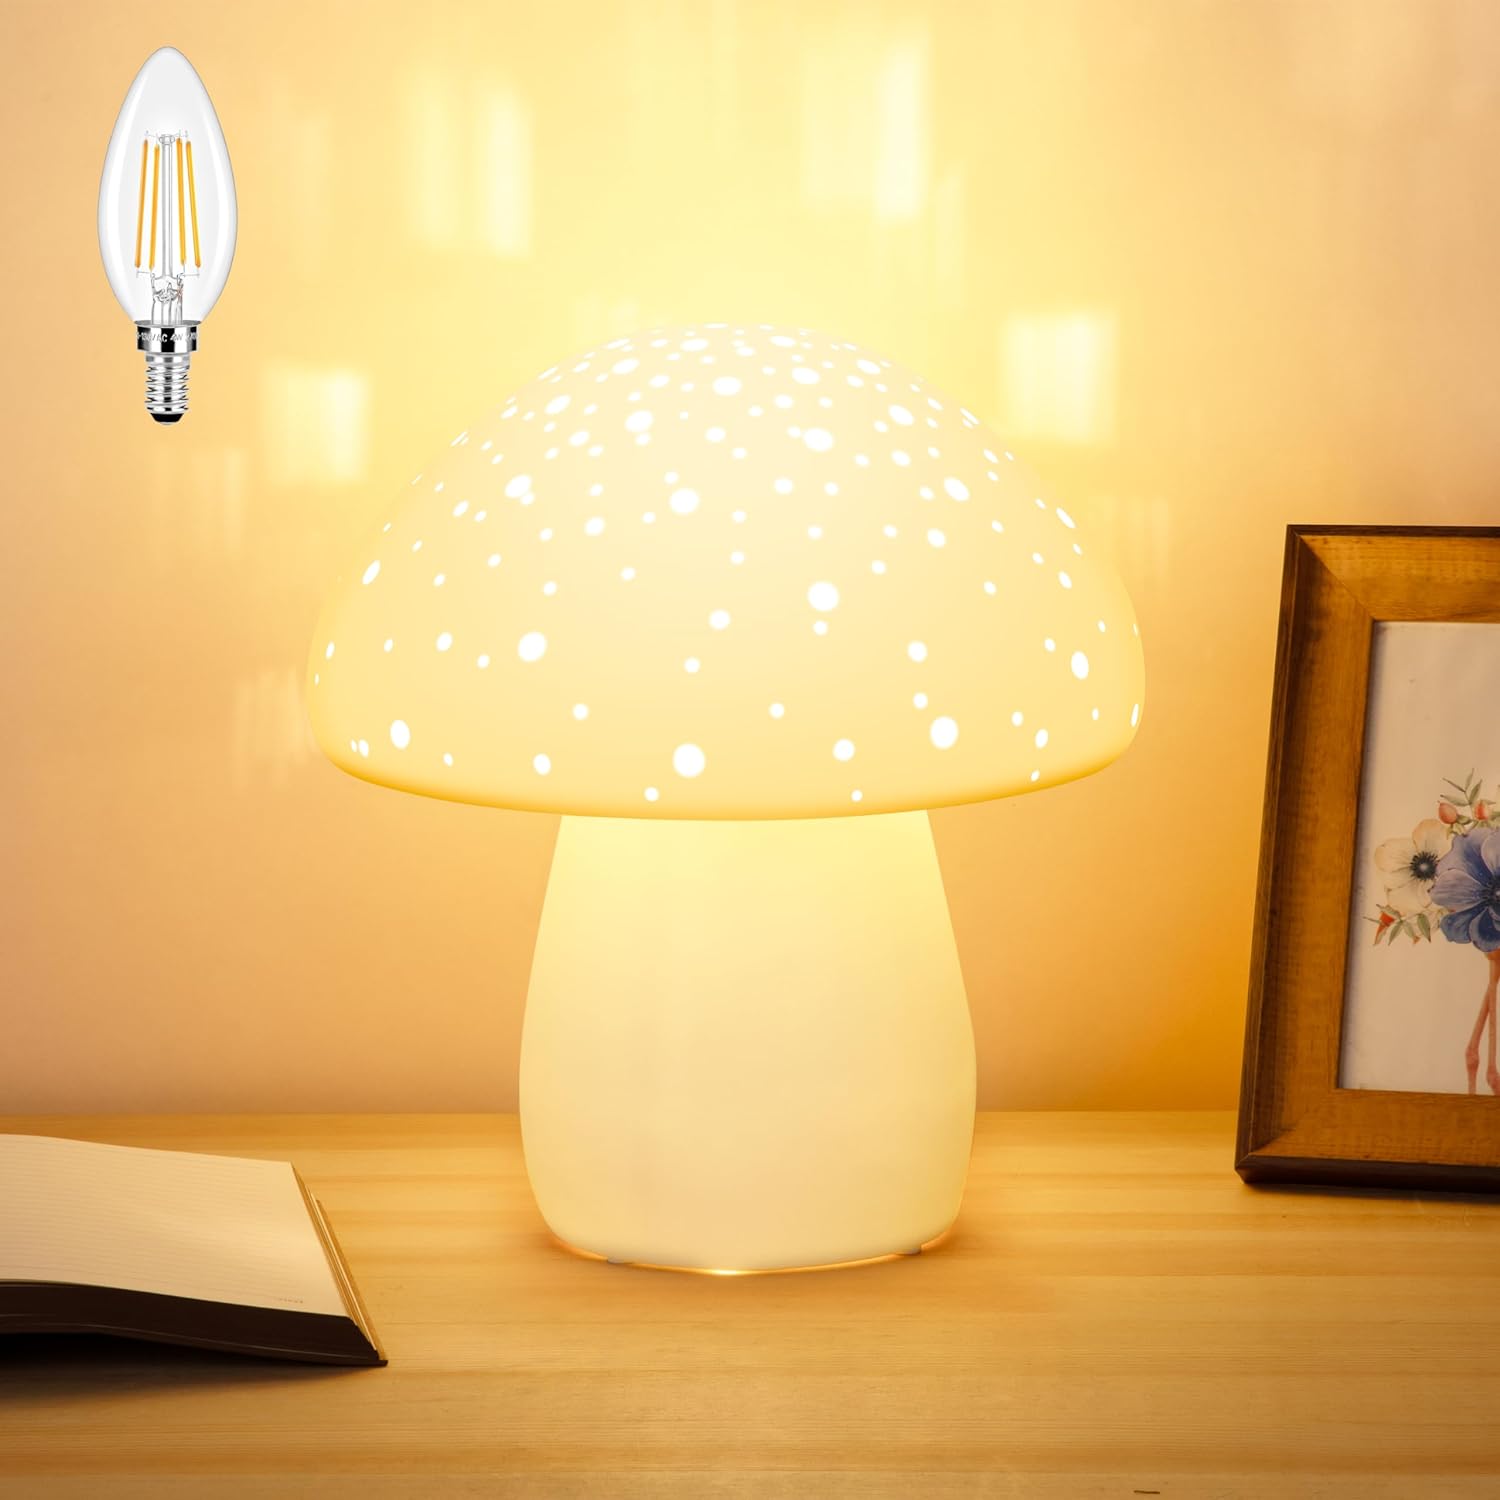 Lampa Grzybkowa - Ceramiczna